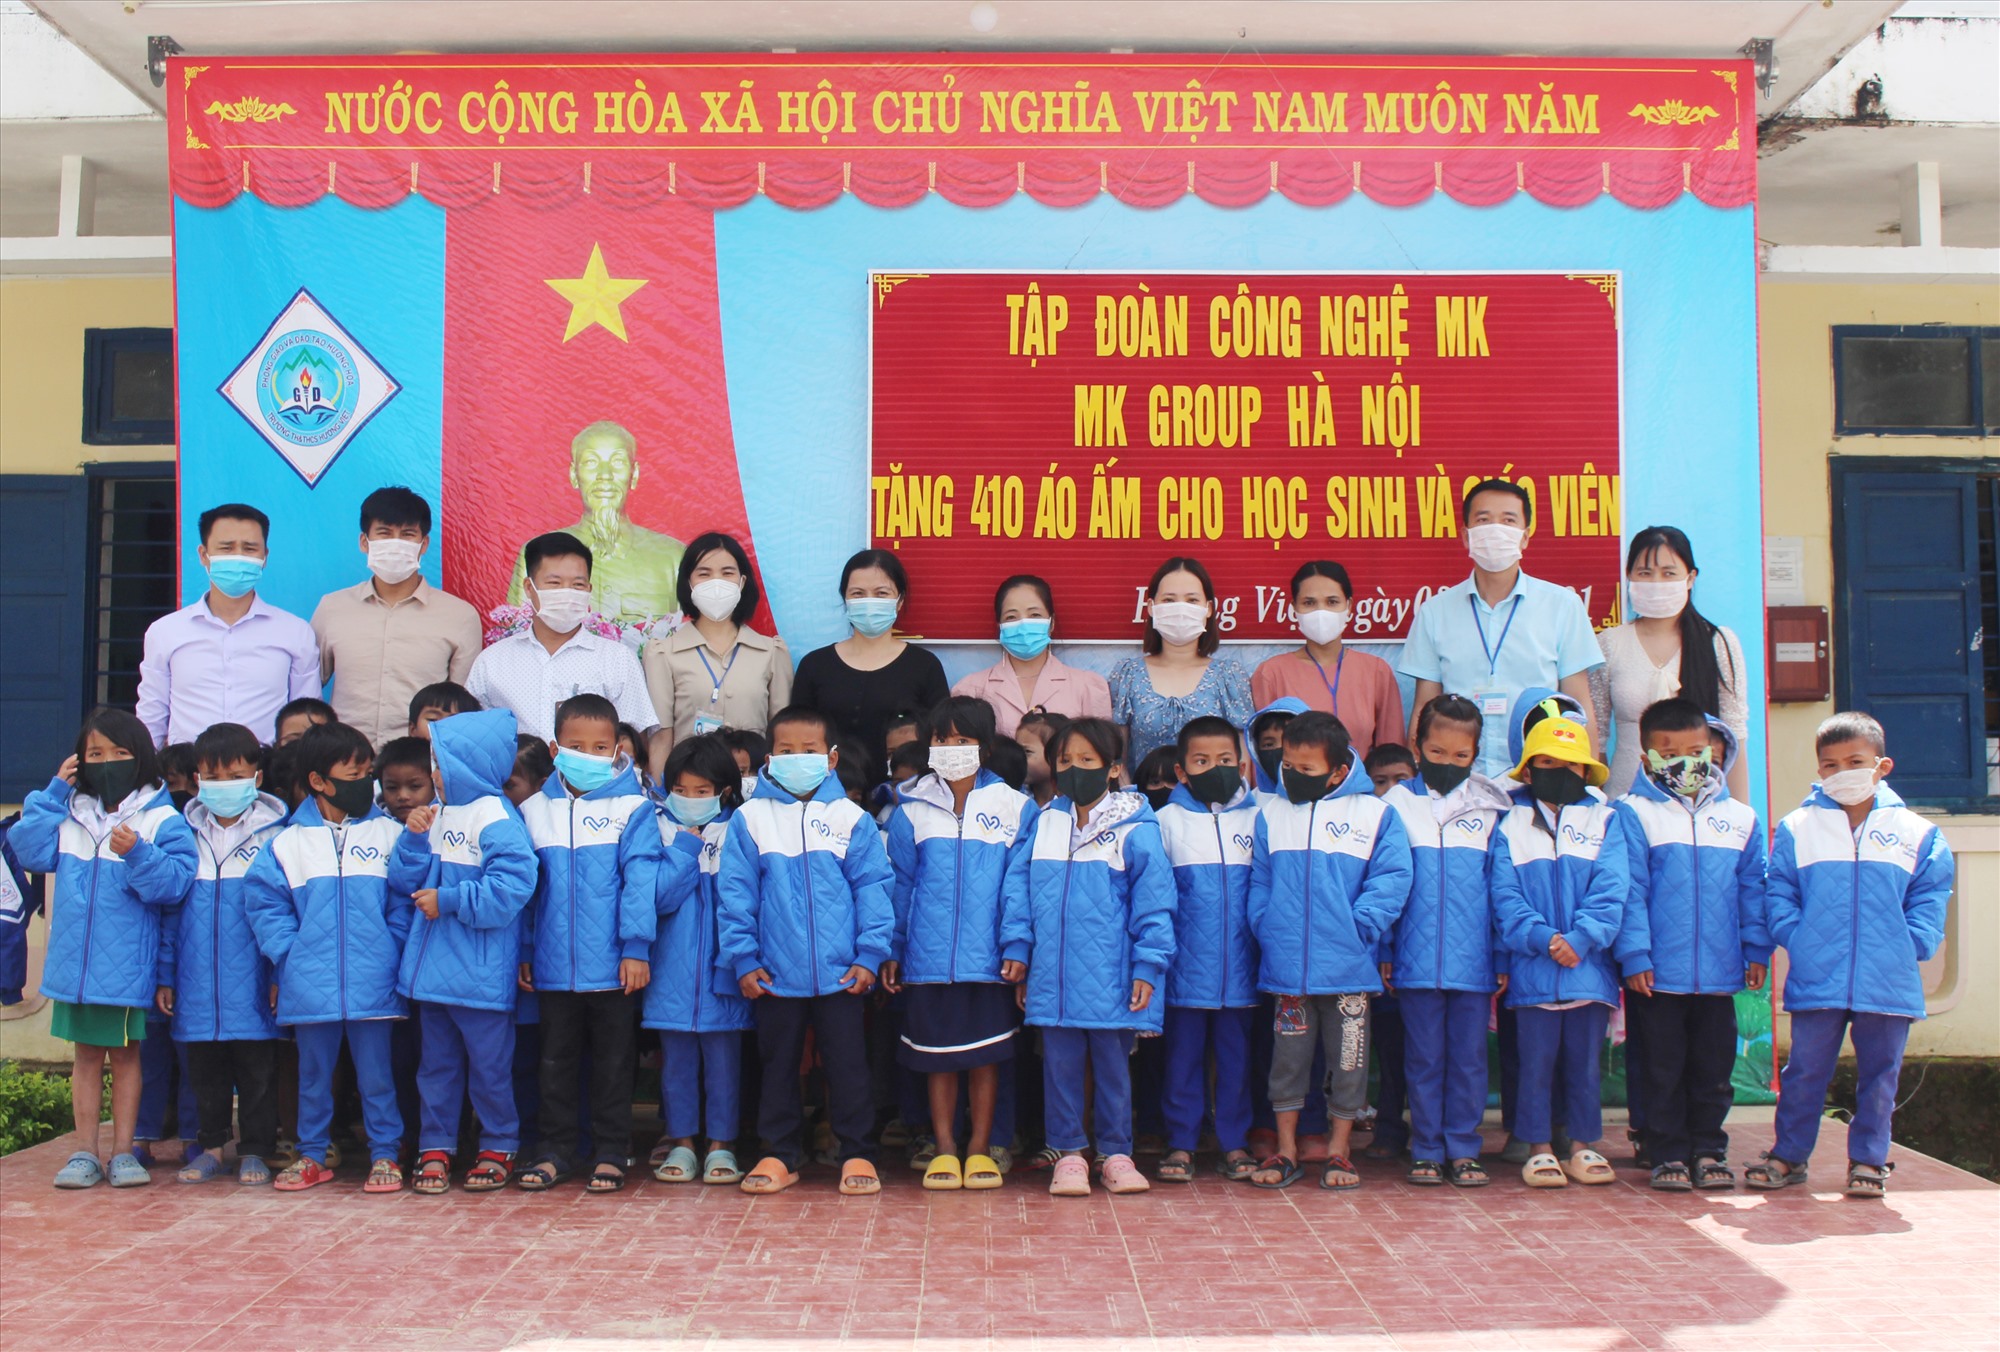 Học sinh tiểu học của trường được nhận áo ấm của Tập đoàn Công nghệ MK - Ảnh: Tú Linh